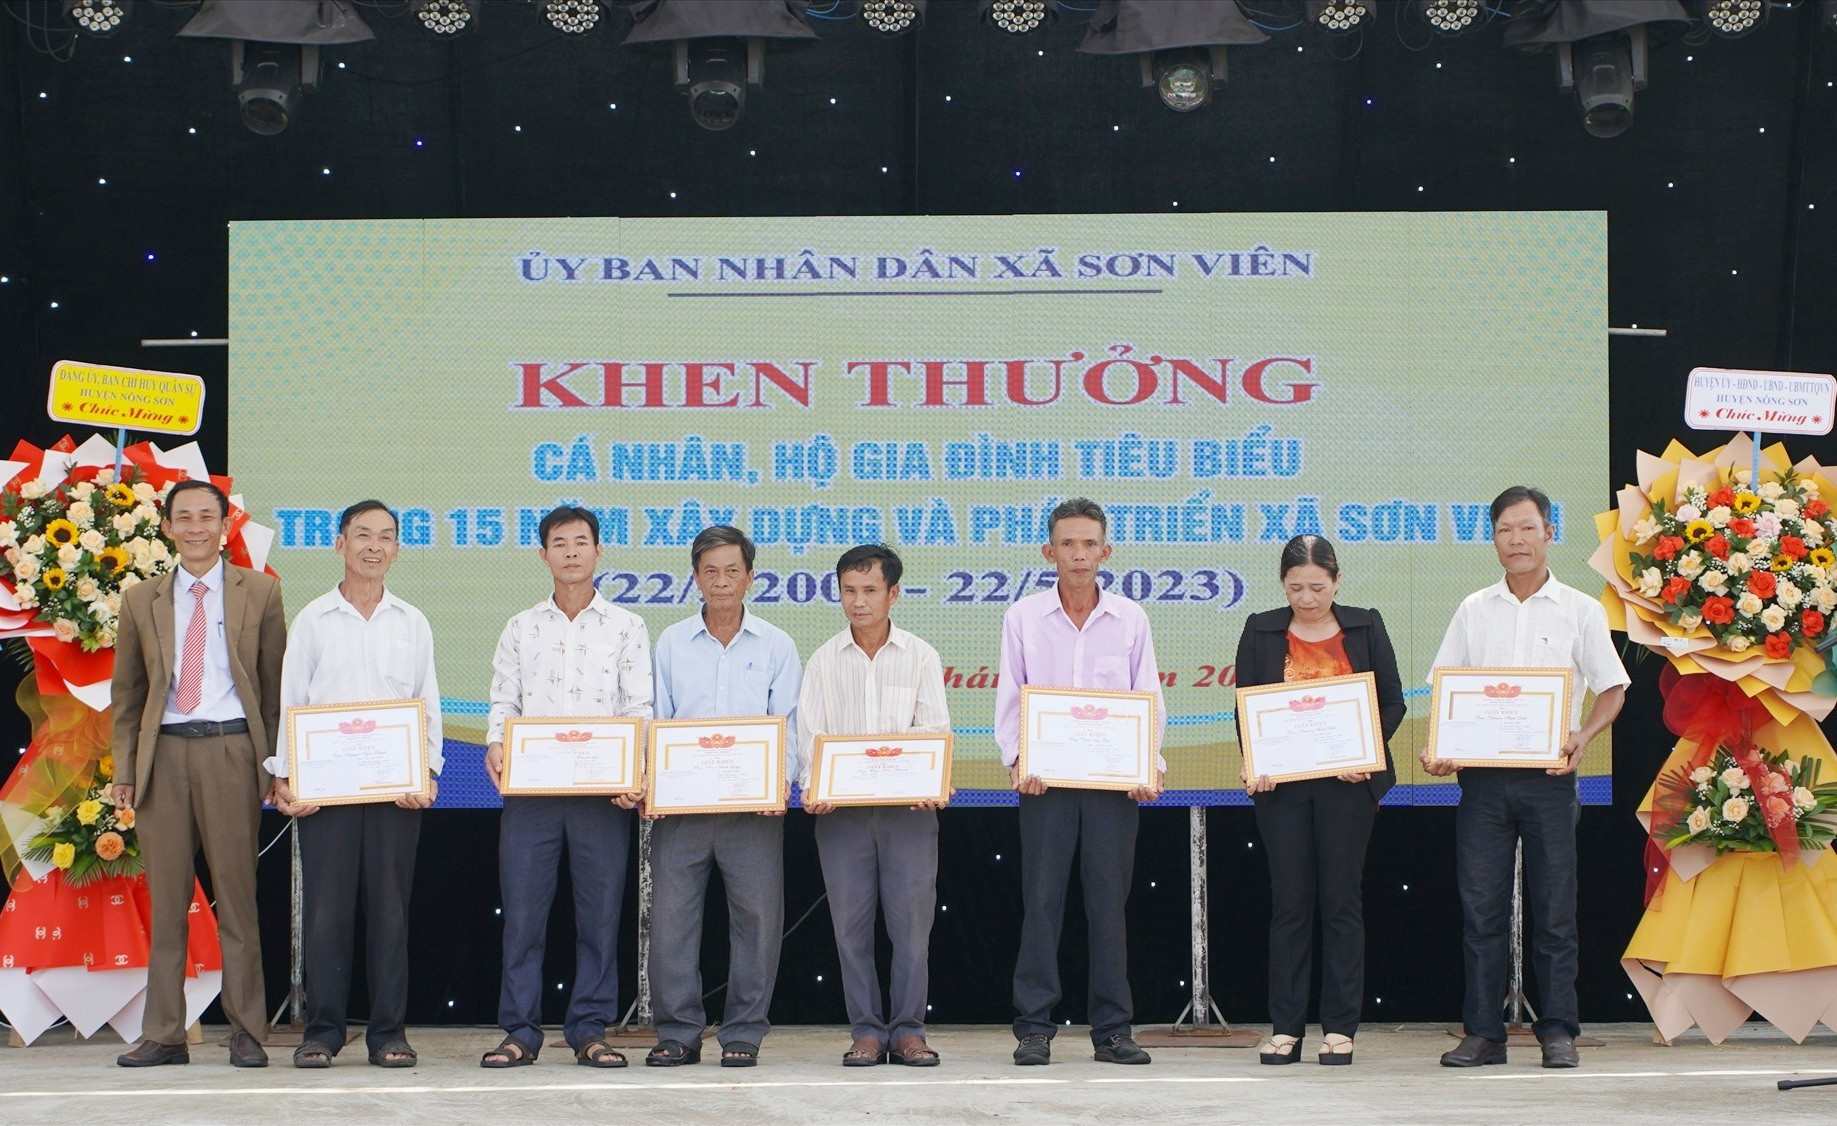 UBND xã Sơn Viên khen thưởng 1 cá nhân và 8 hộ gia đình có nhiều đóng góp cho sự phát triển của xã trong 15 năm xây dựng và phát triển.